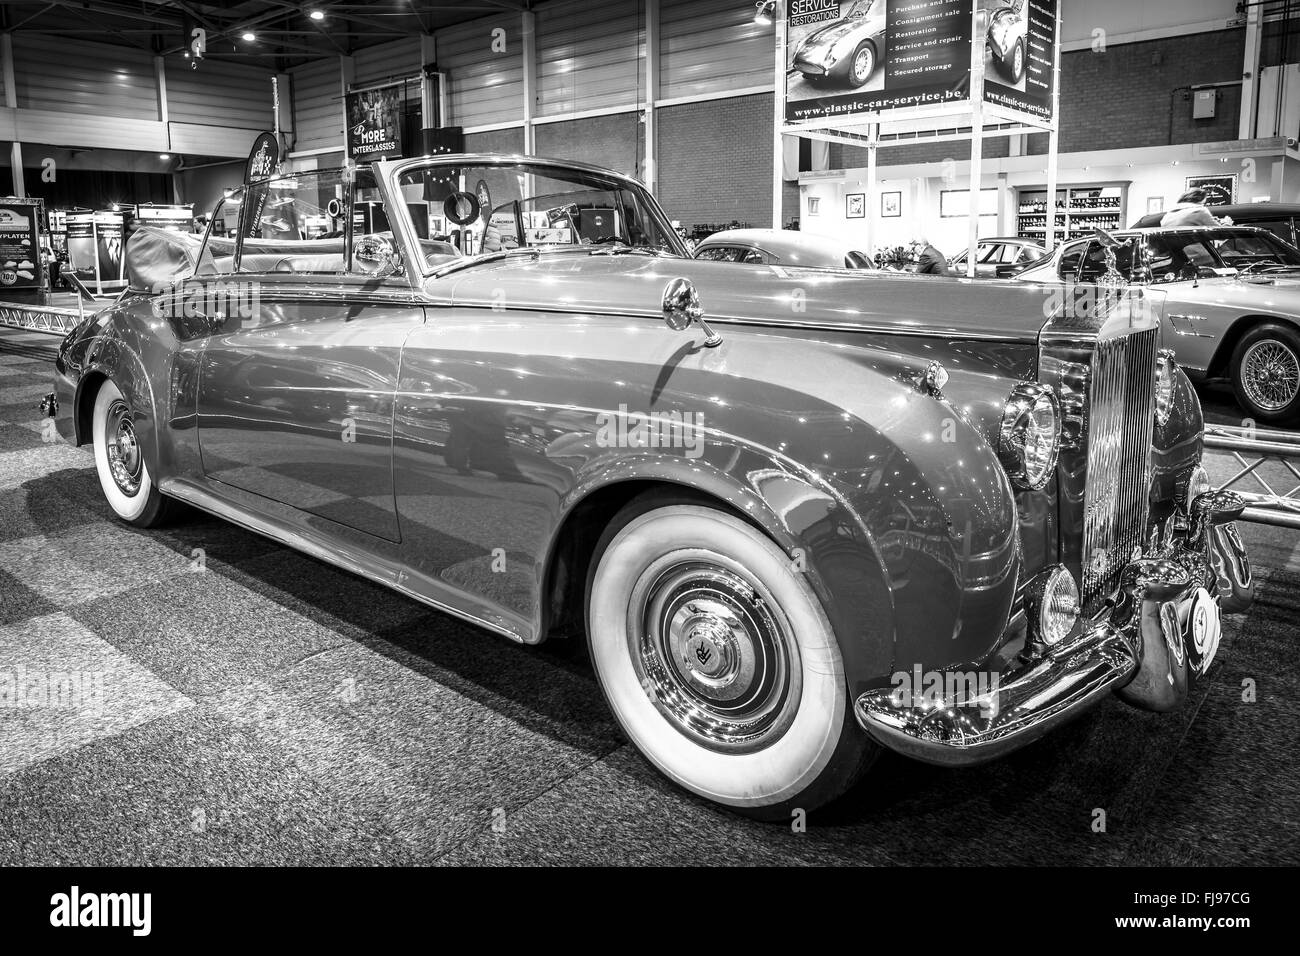 1962 Rolls-Royce Silver Cloud II For Sale  Automotive Restorations, Inc. —  Automotive Restorations, Inc.